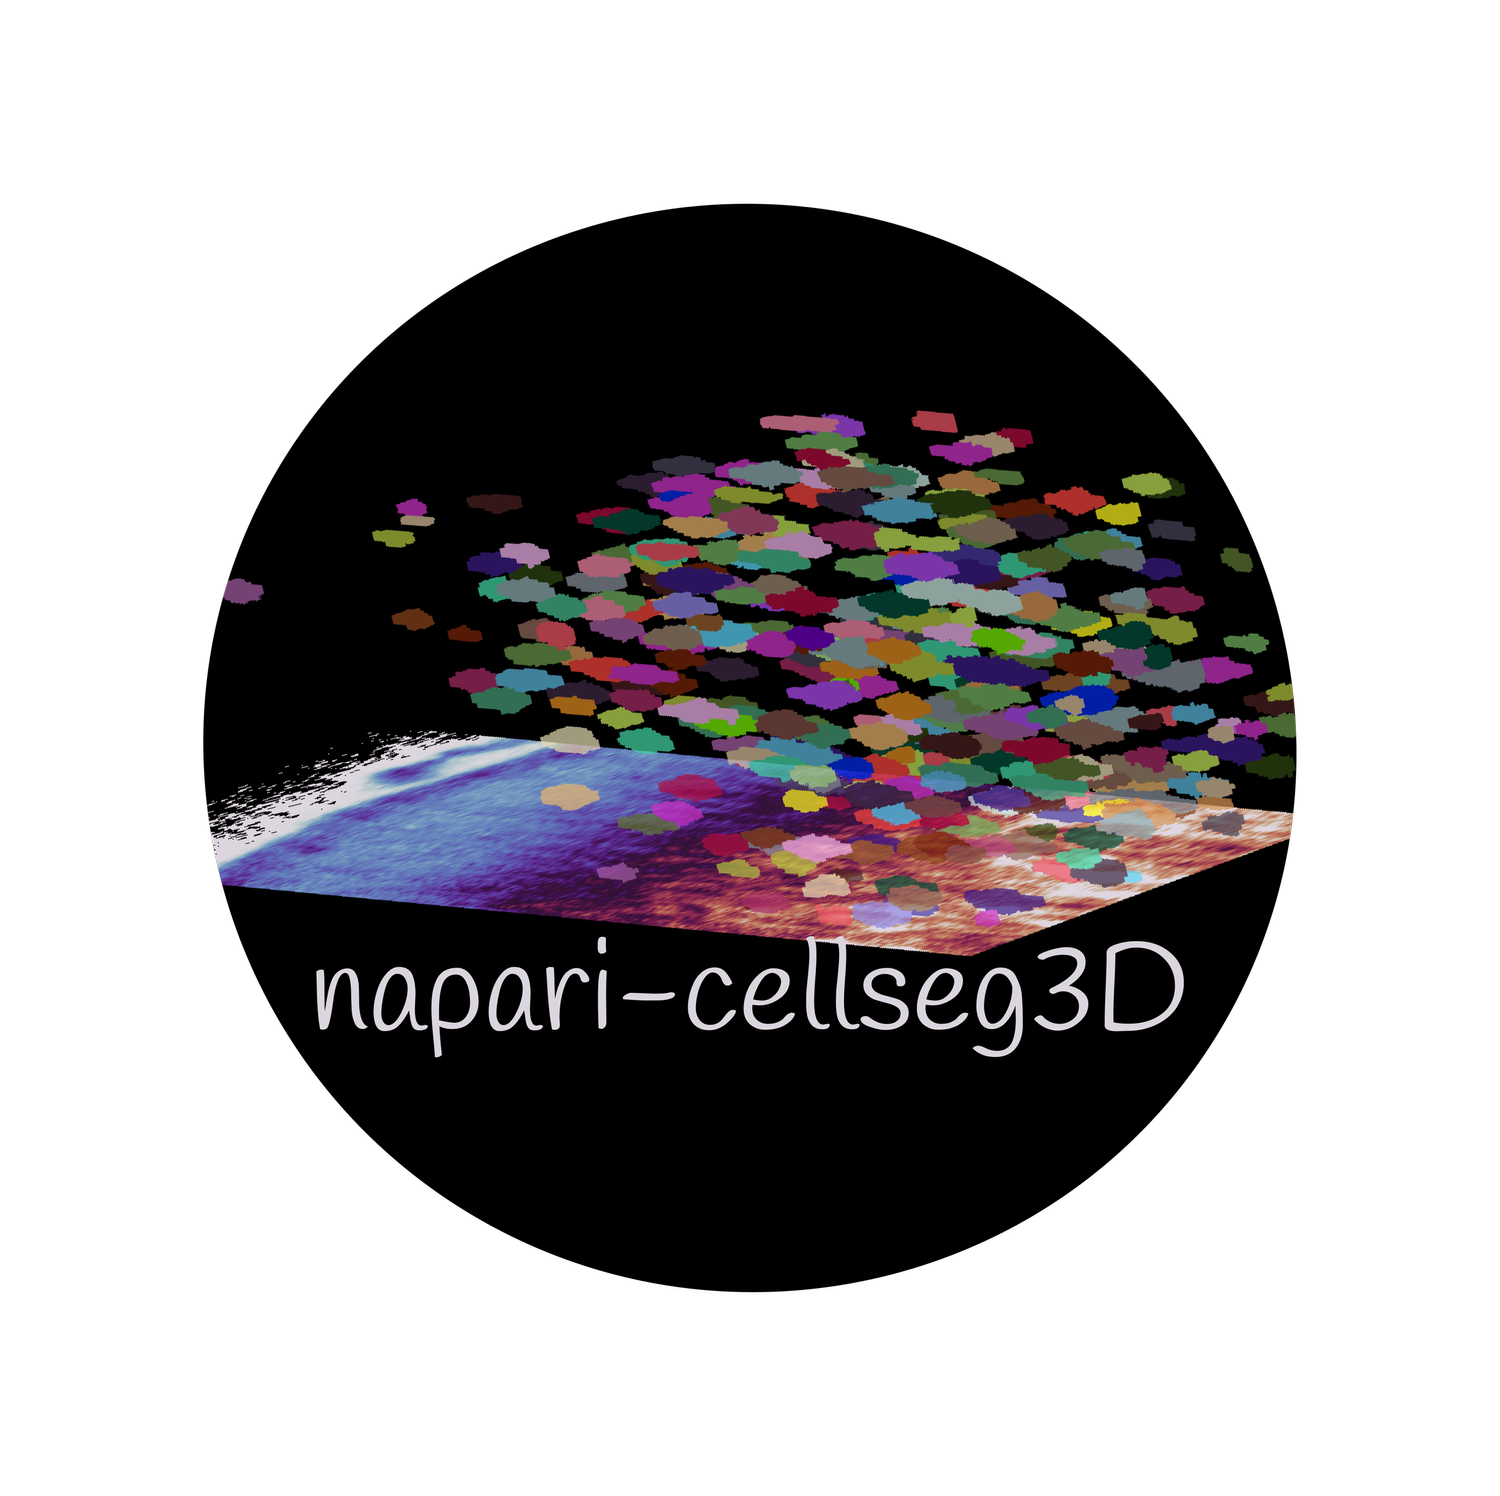 cellseg3d logo